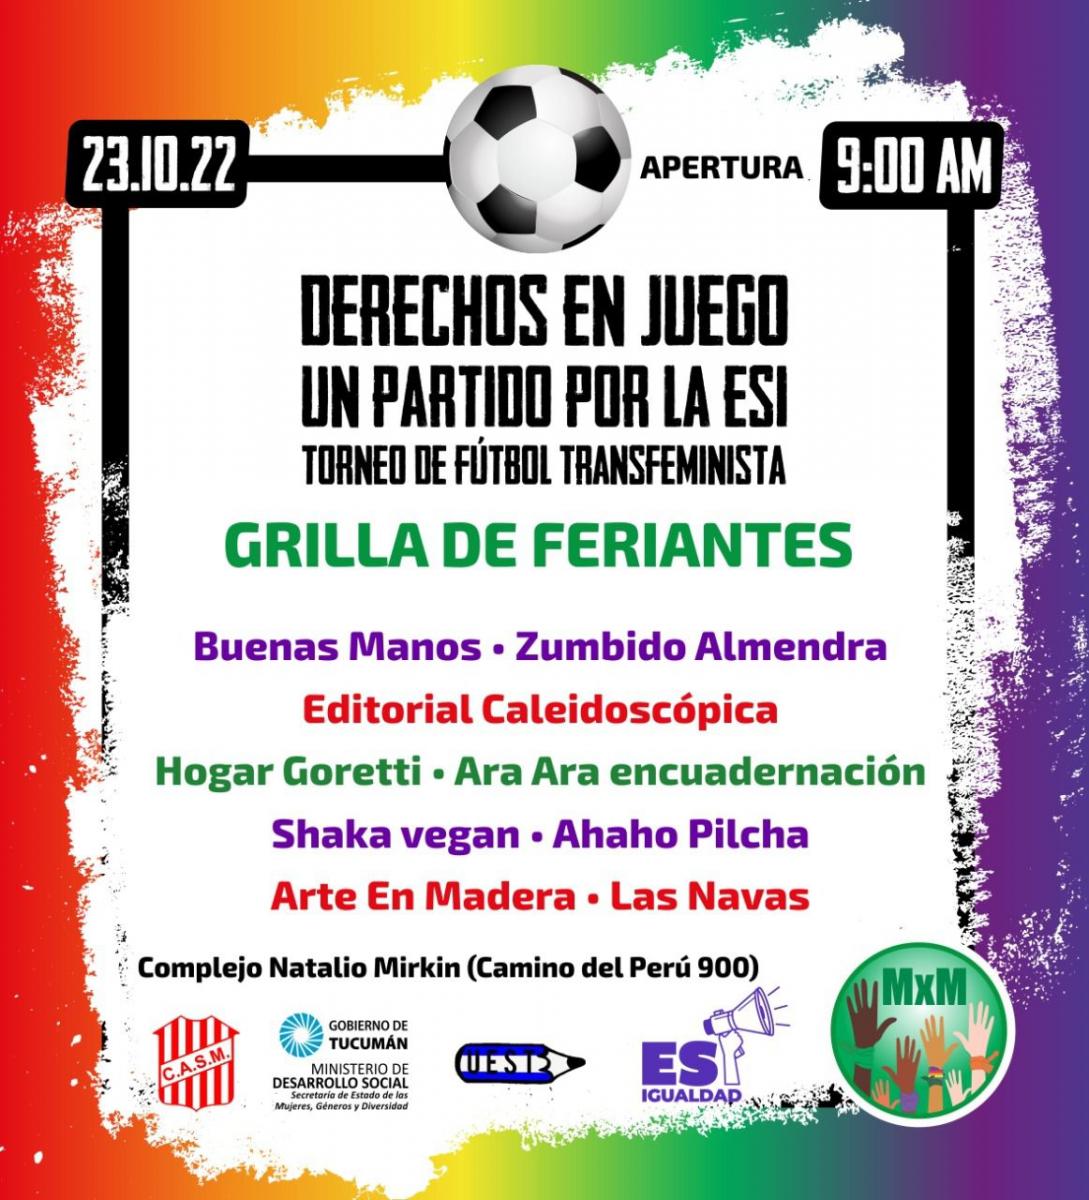 Derechos en Juego: un partido transfeminista de fútbol